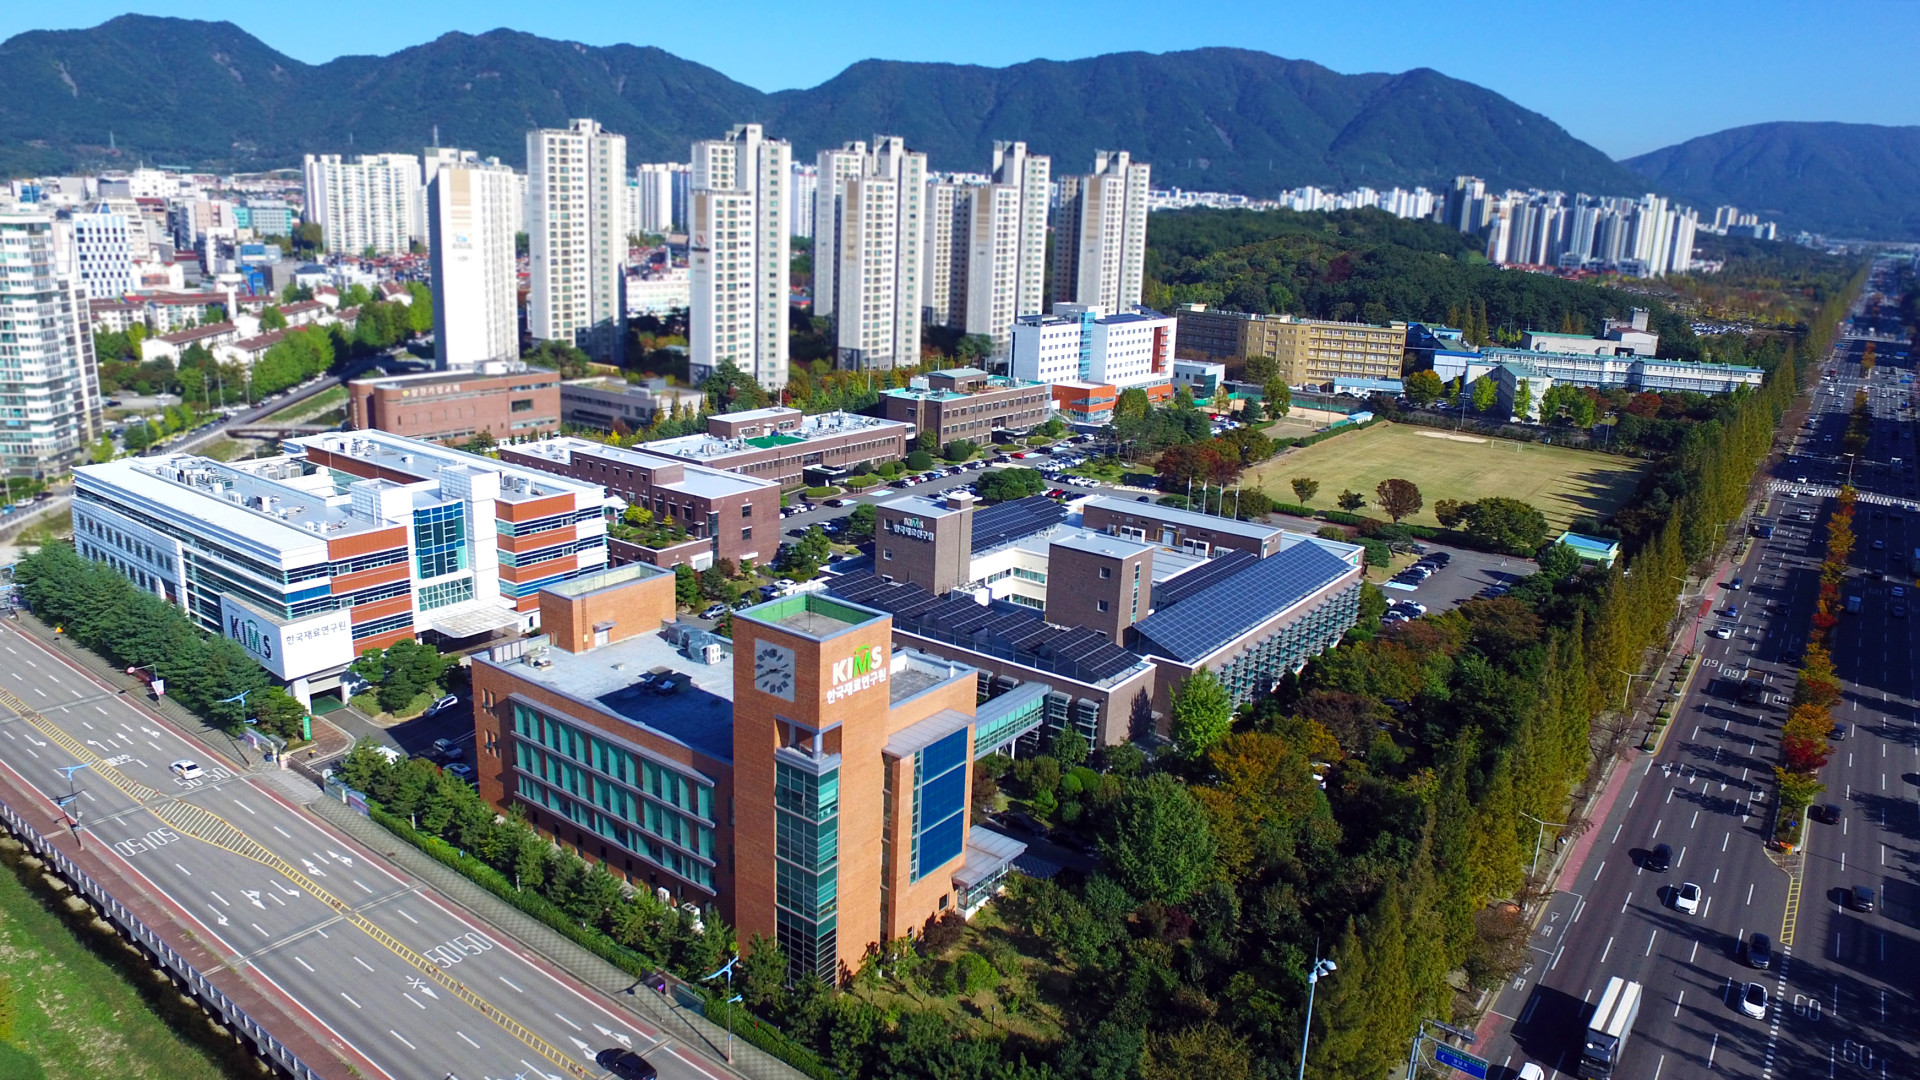 Korea Institute of Materials Science